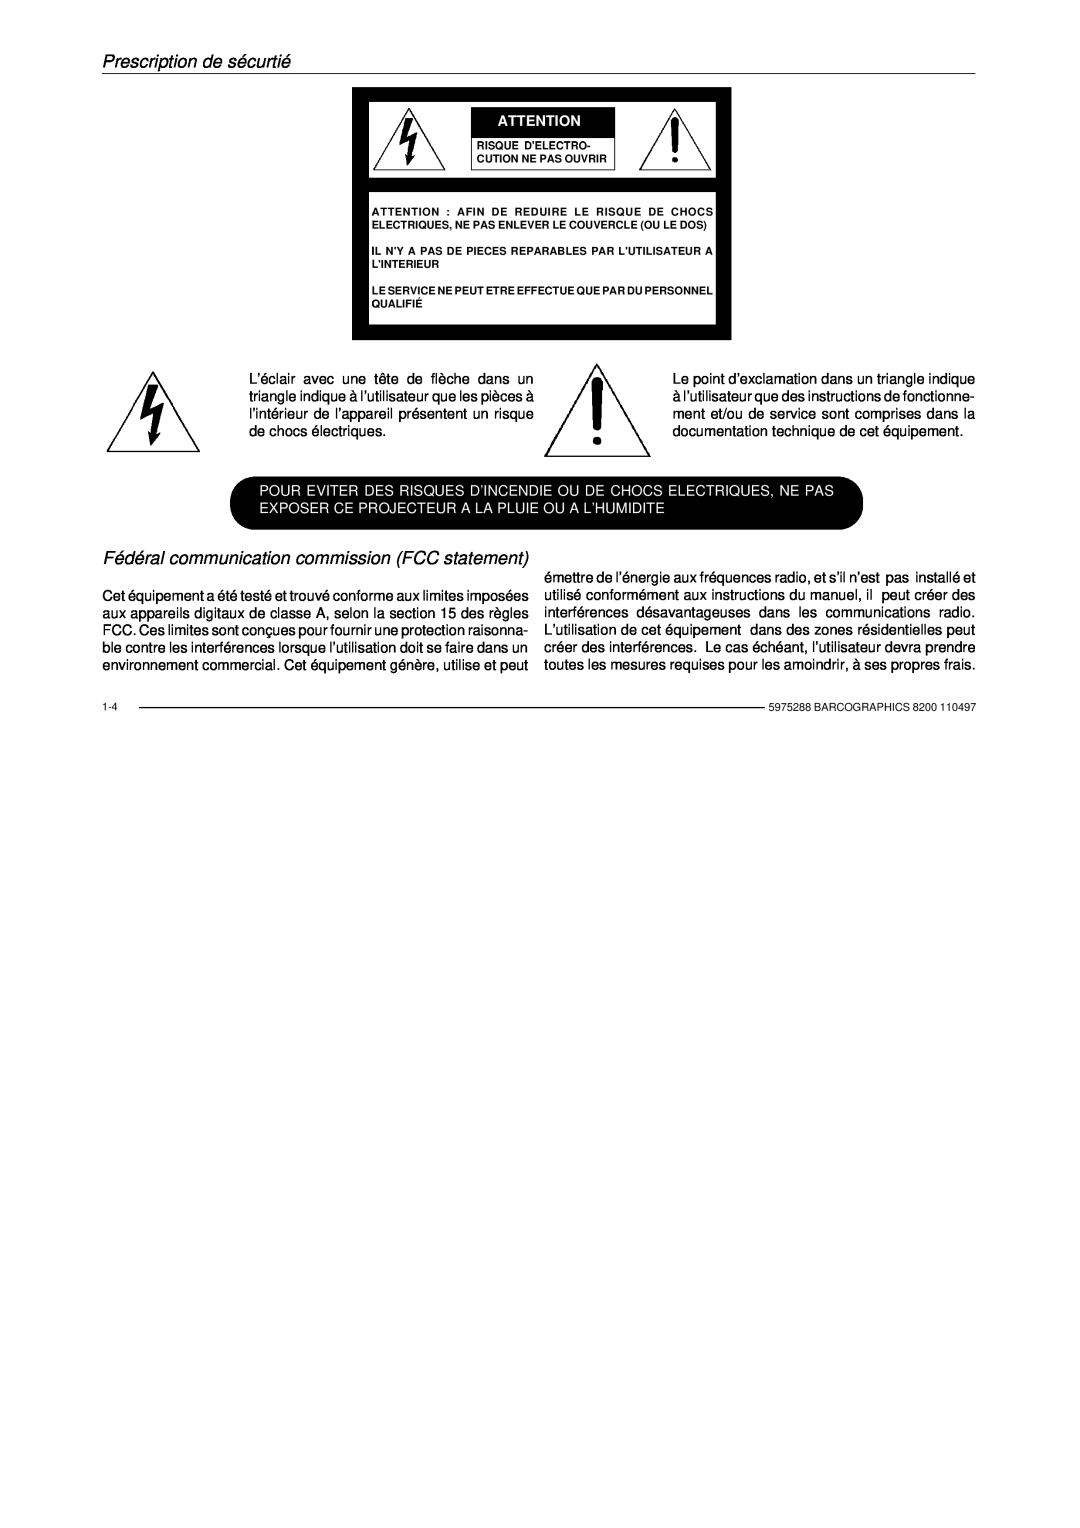 Barco R9001330 owner manual Fédéral communication commission FCC statement, Prescription de sécurtié 